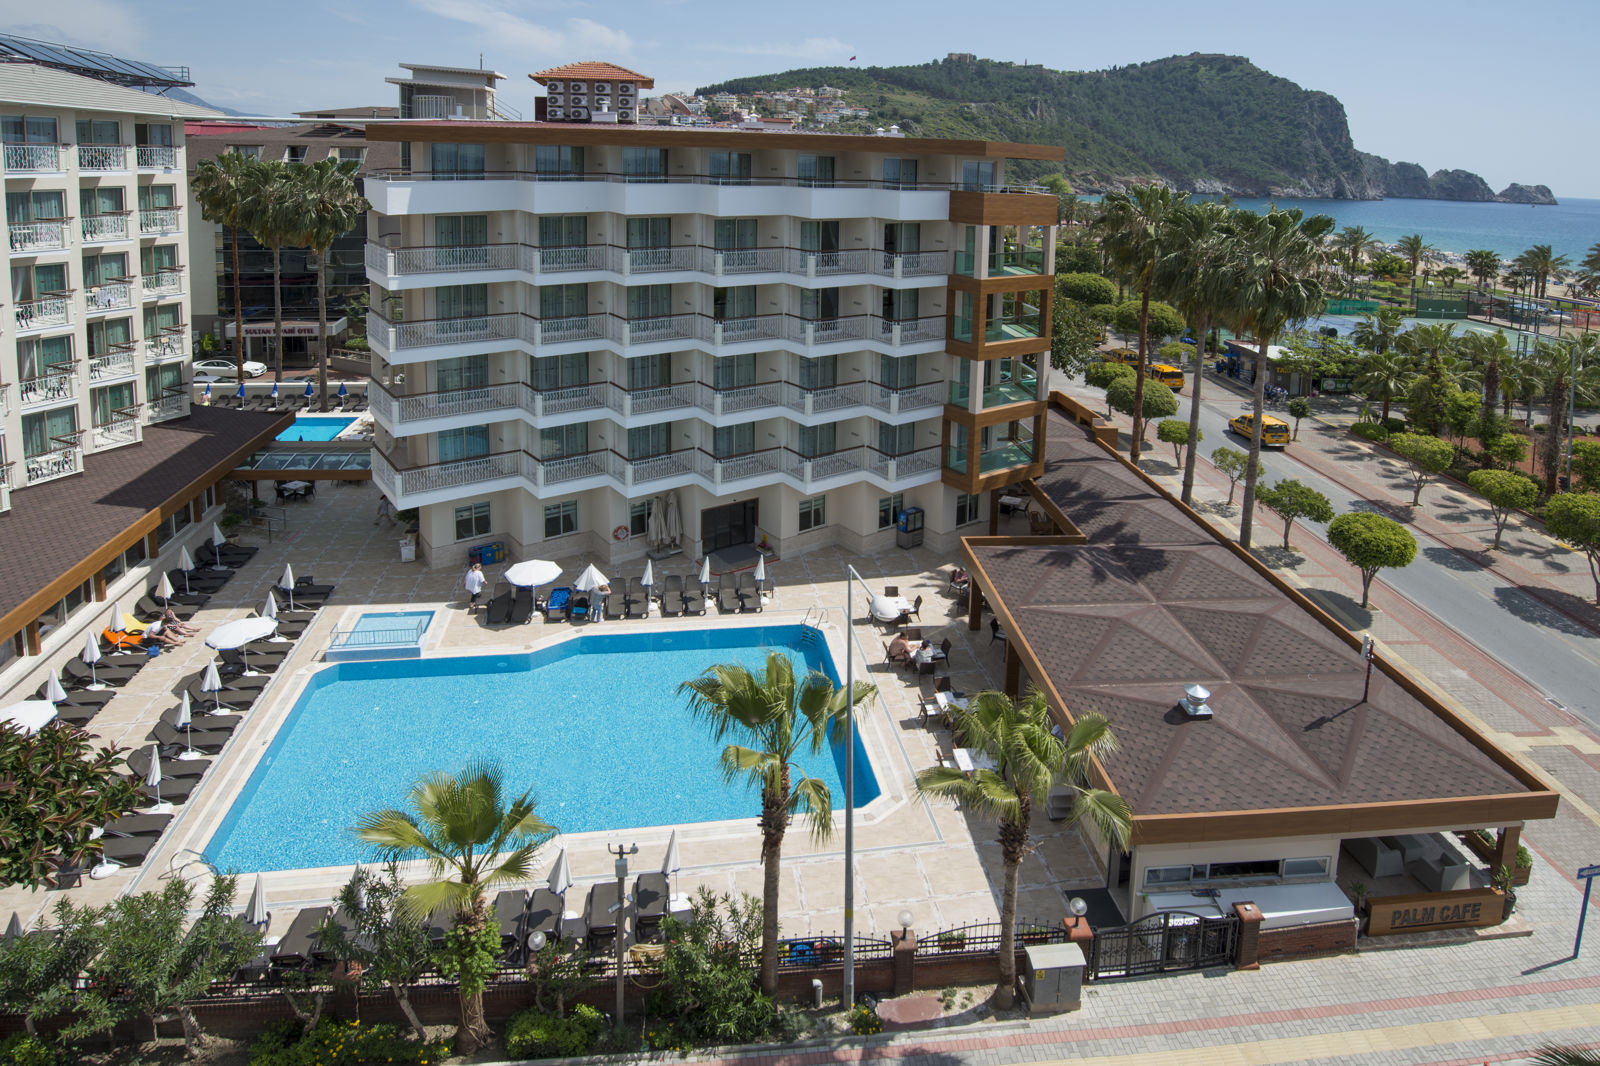 Meer info over Riviera Hotel&Spa  bij Corendon